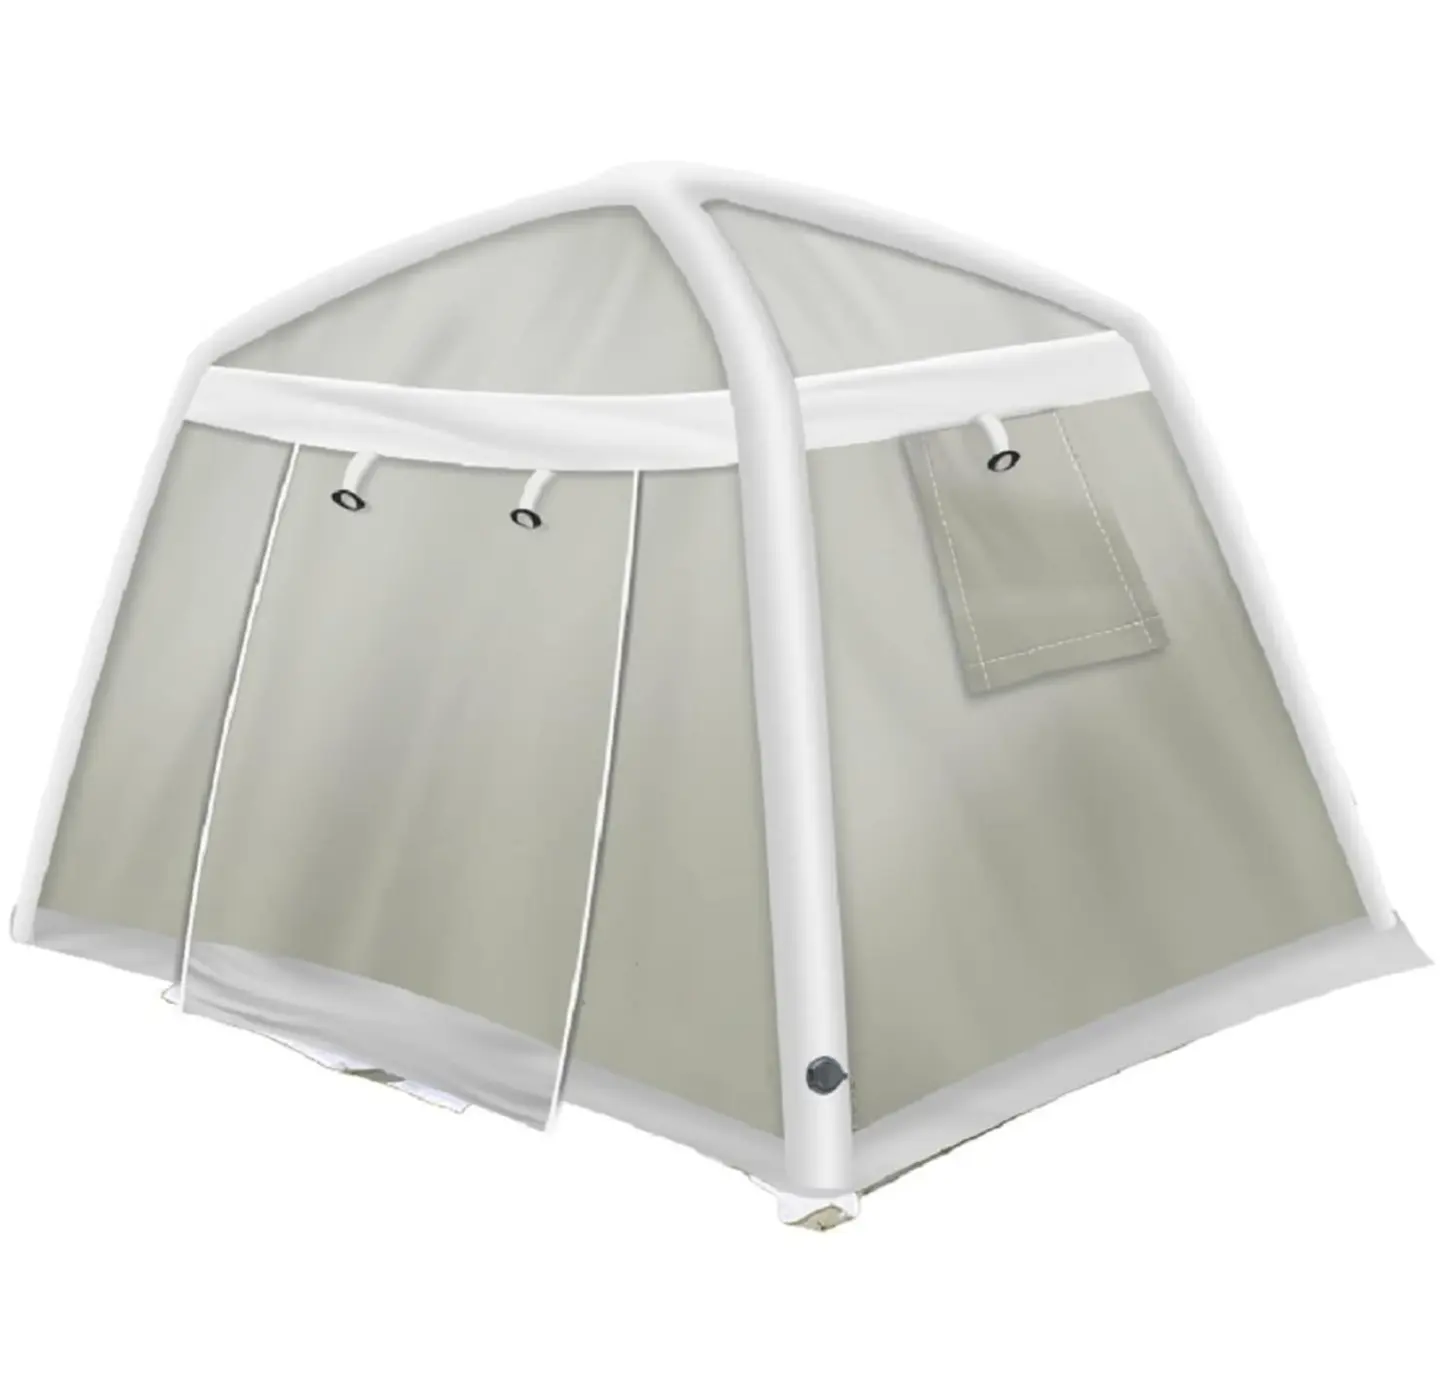 جديد الموضة HITU أفضل سعر 4-6 أشخاص كبير مقاوم للماء الهوائية خيمة في الهواء الطلق نفخ الحديقة العربية خيمة التخييم للبيع